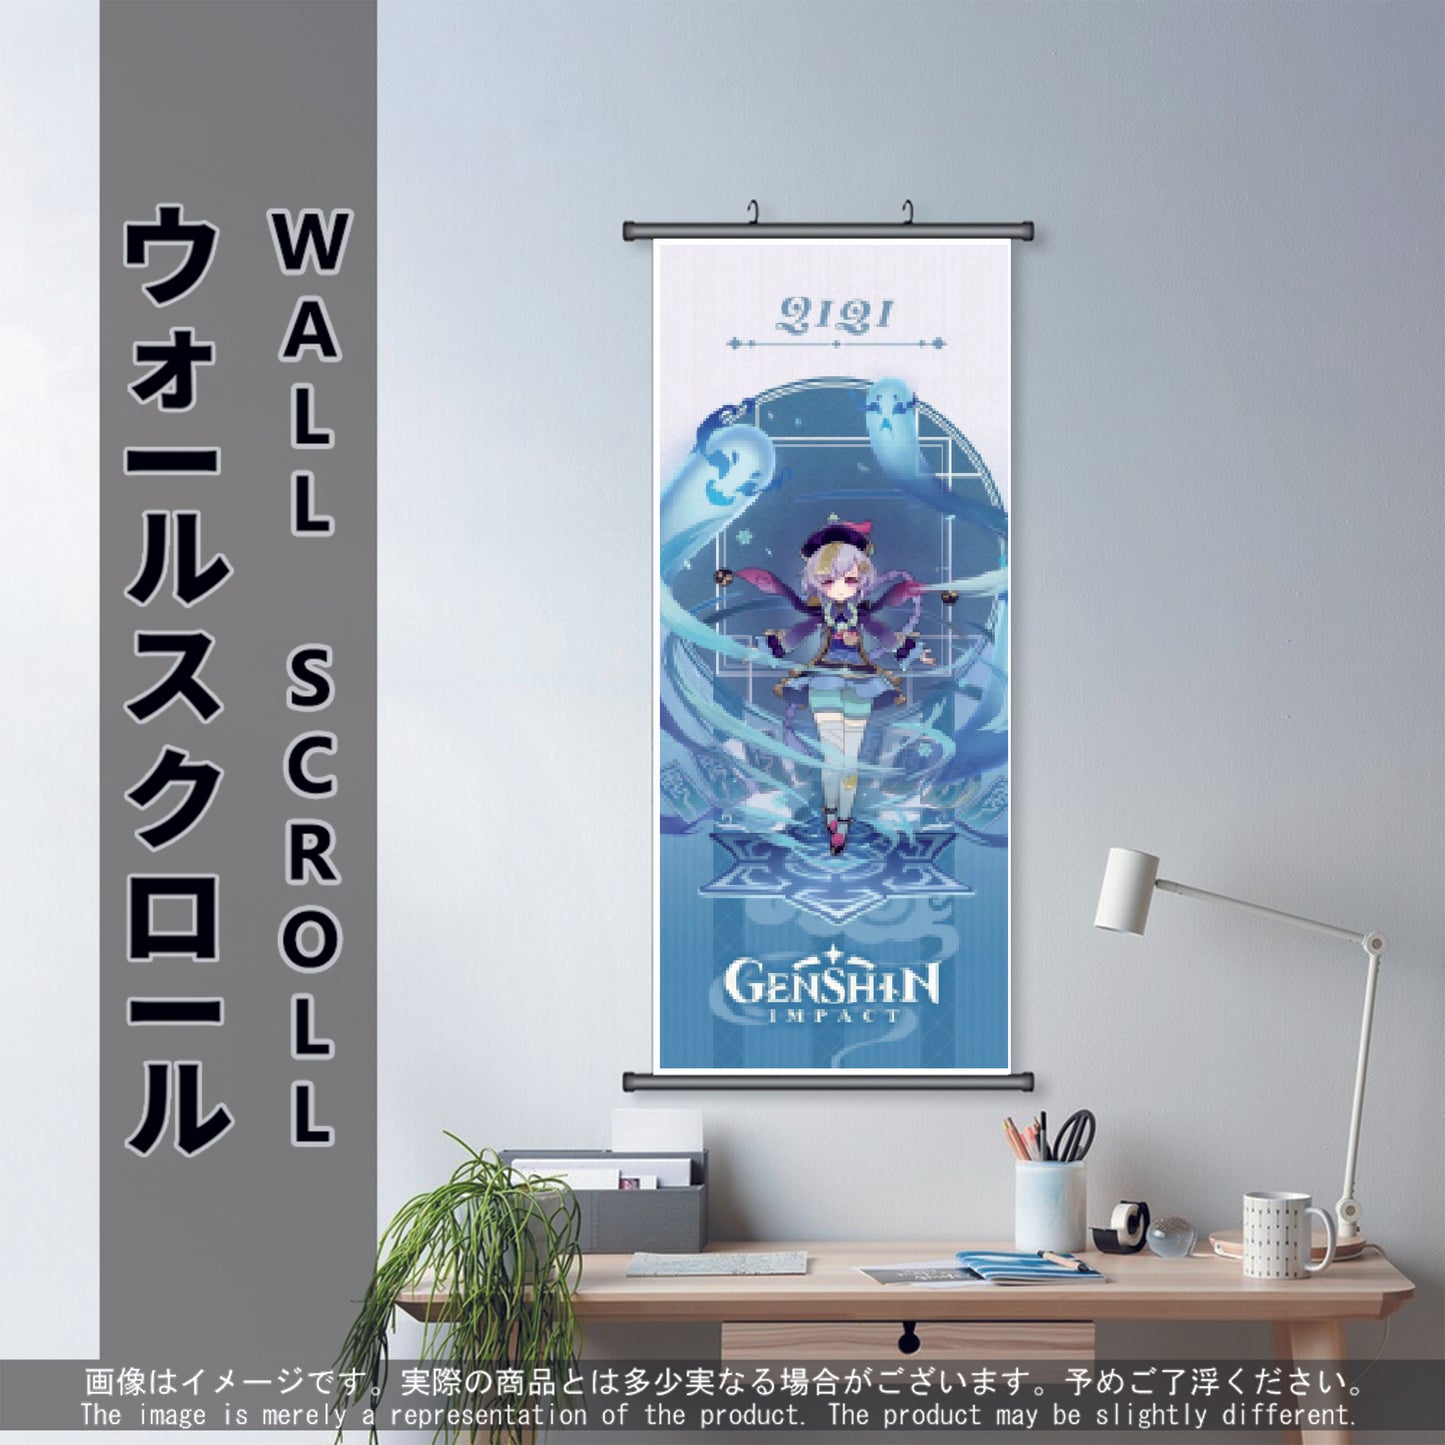 (GSN-CRYO-05) QIQI Genshin Impact Anime Wall Scroll